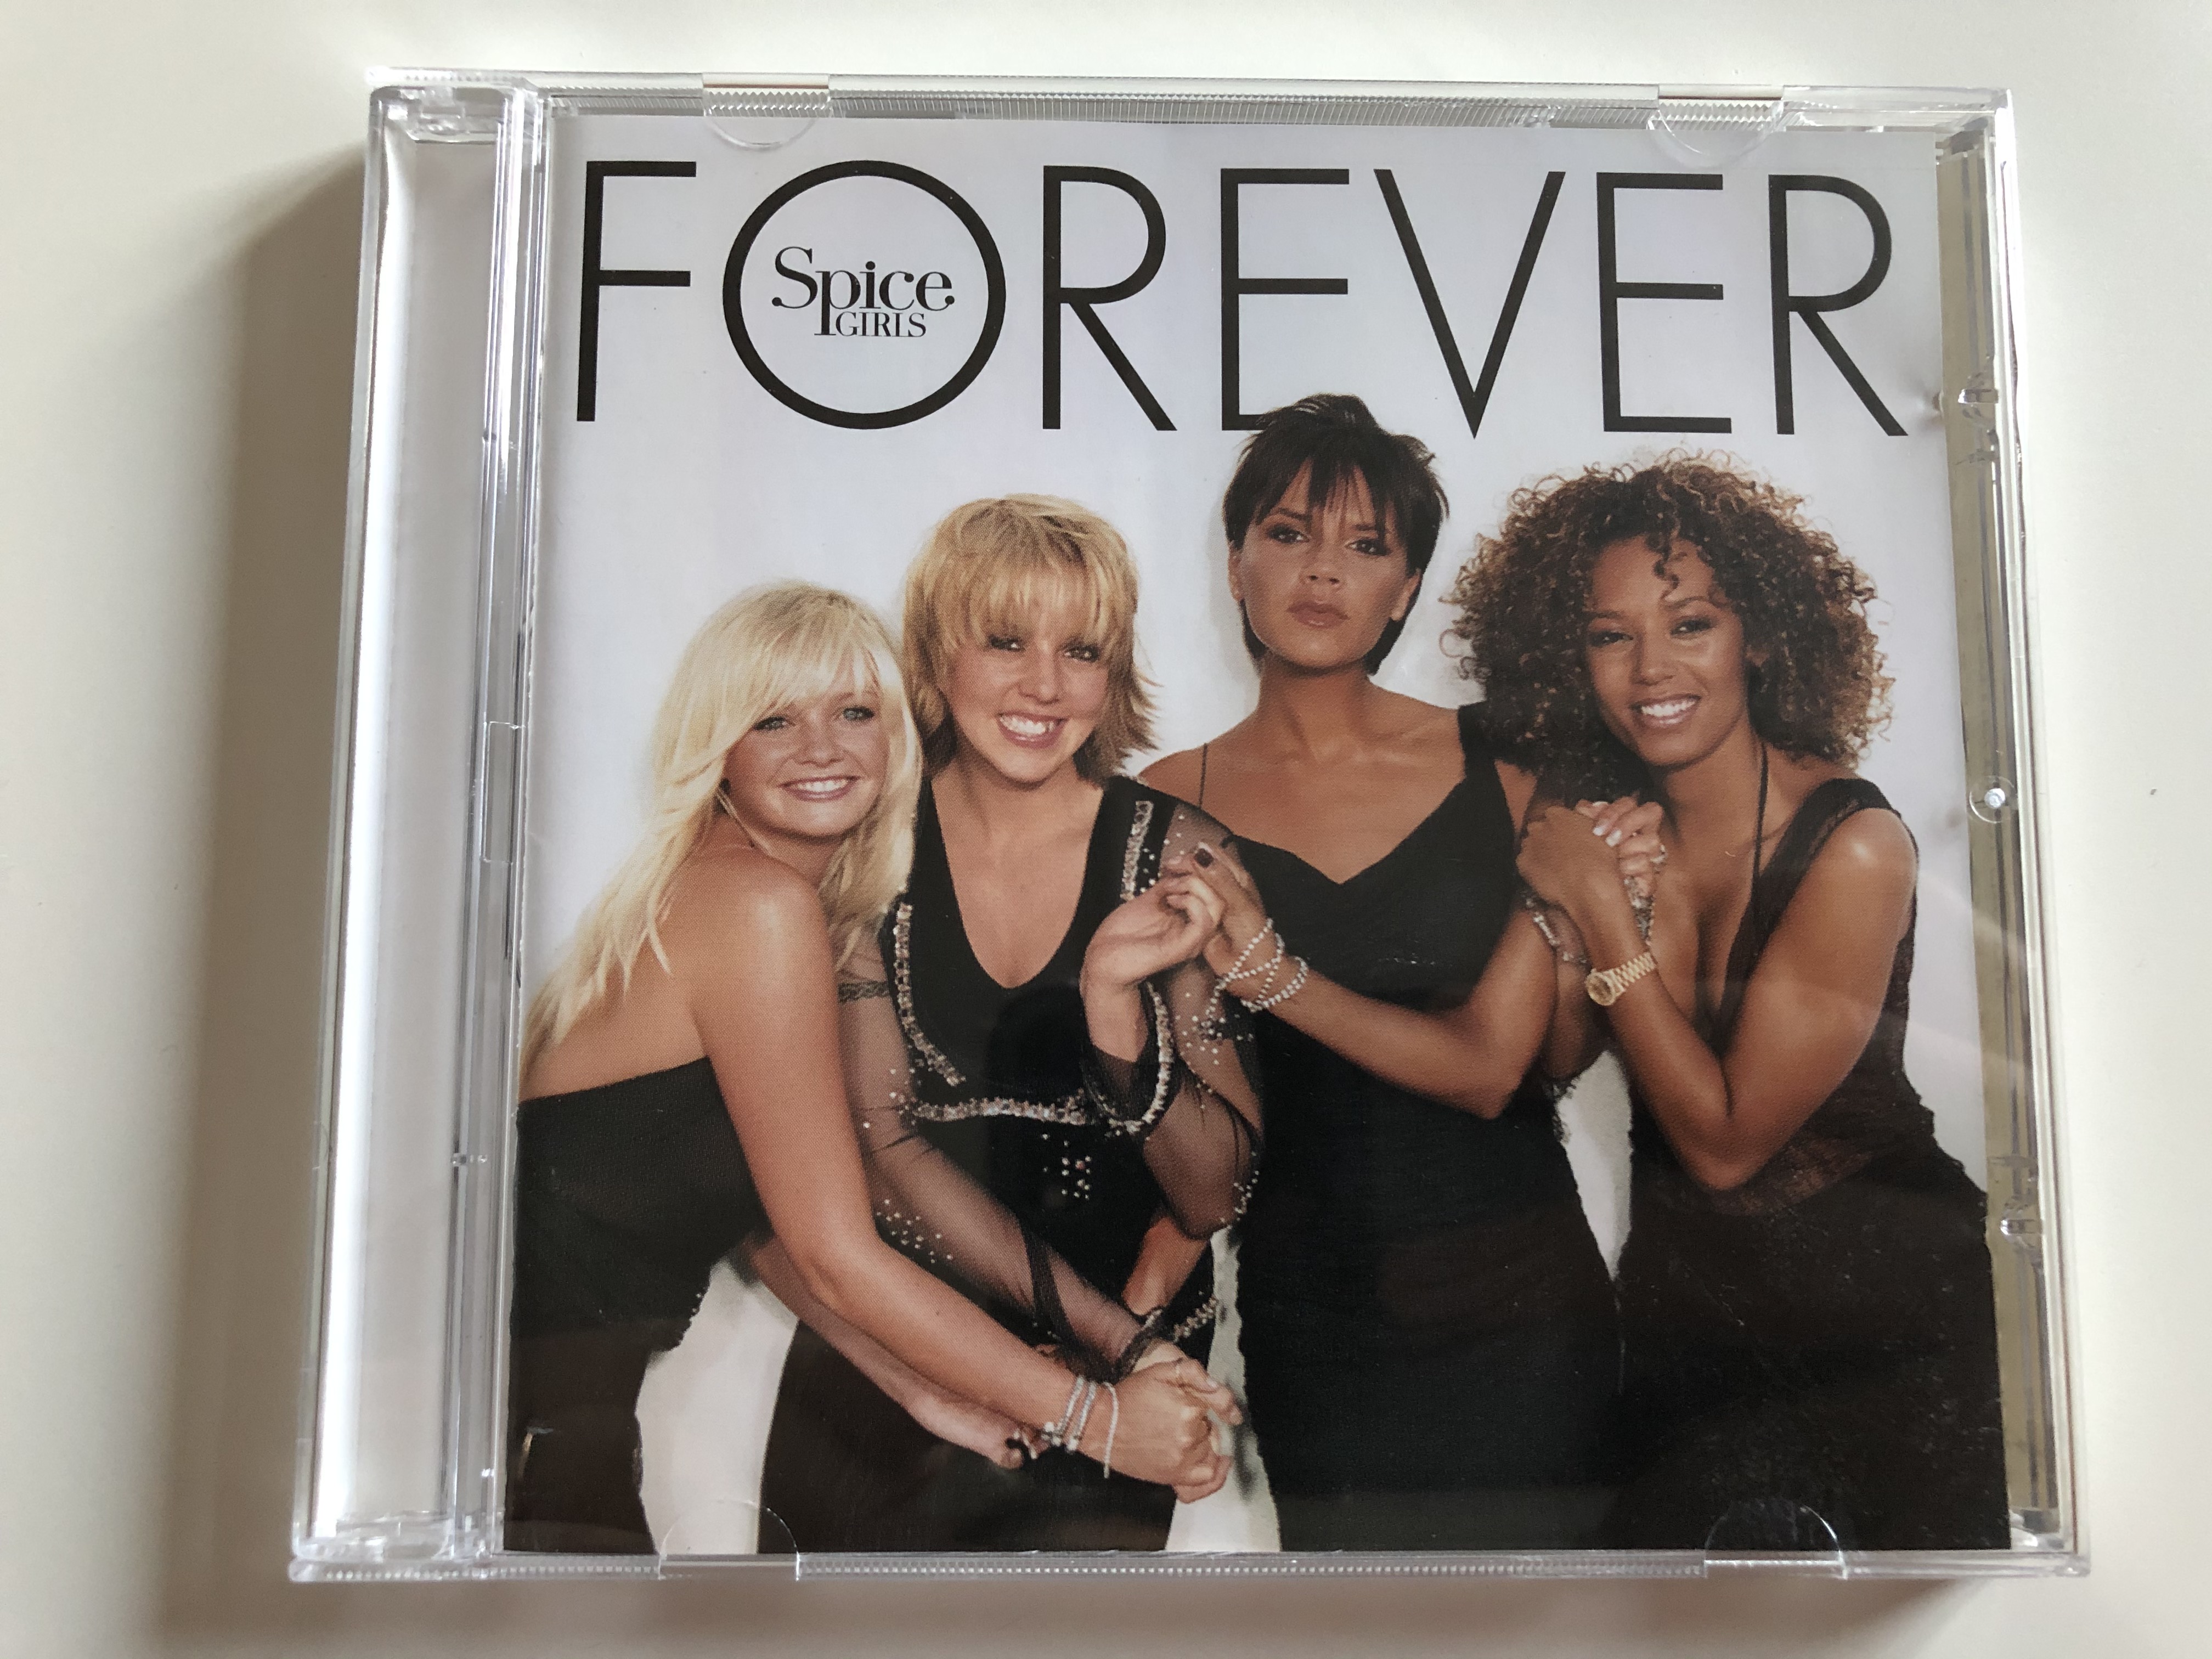 spice-girls-forever-virgin-audio-cd-2000-cdv-2928-1-.jpg